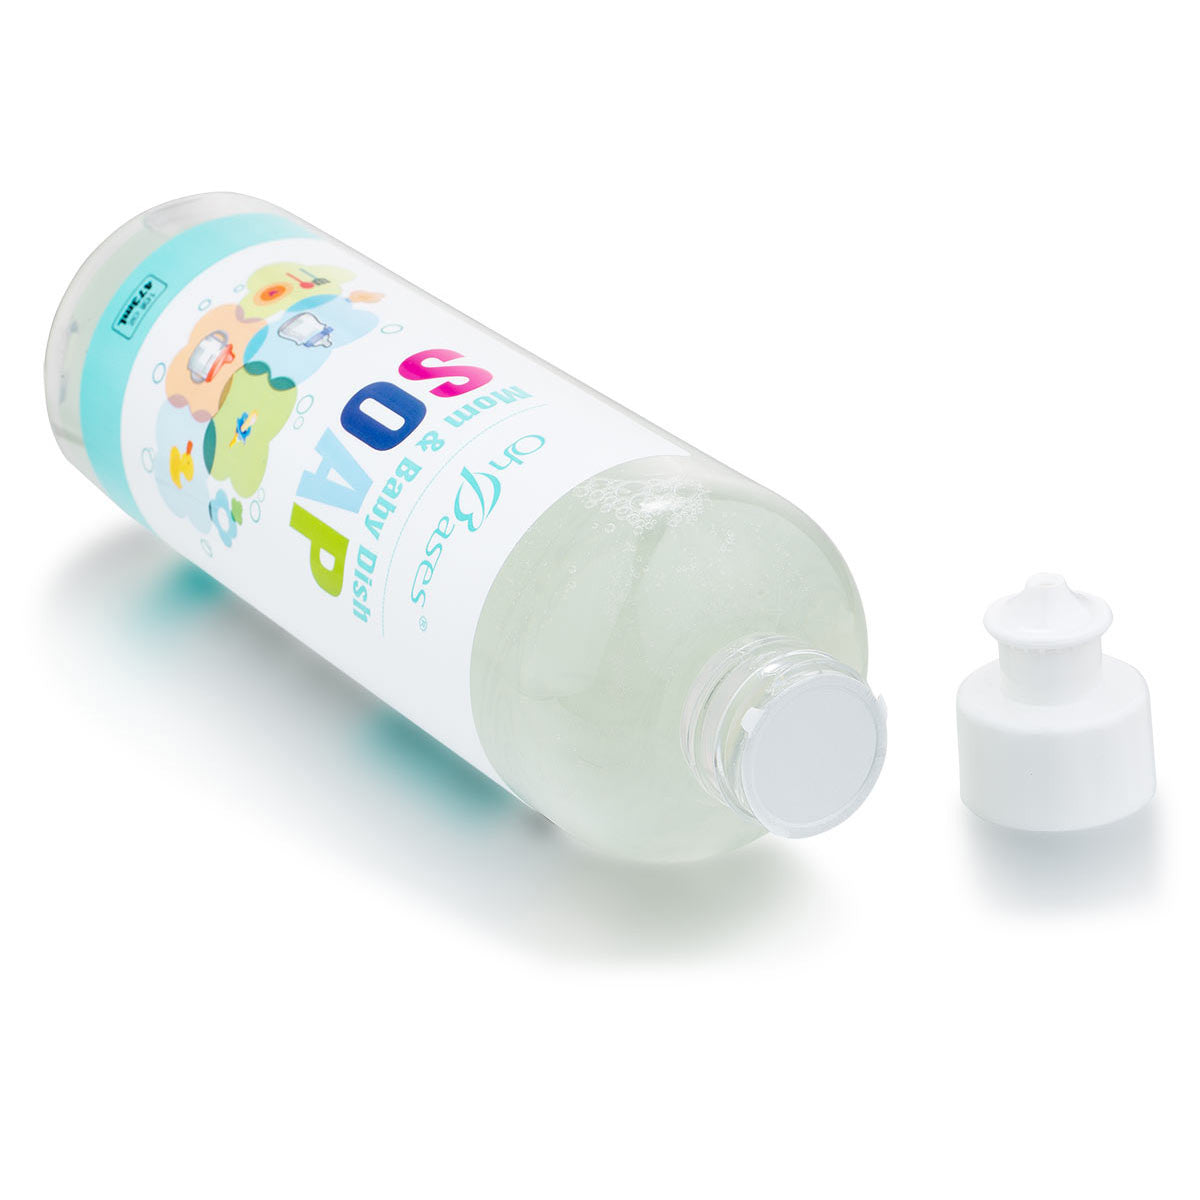 Best Organic Dish Soap for Baby Bottles – OhBases